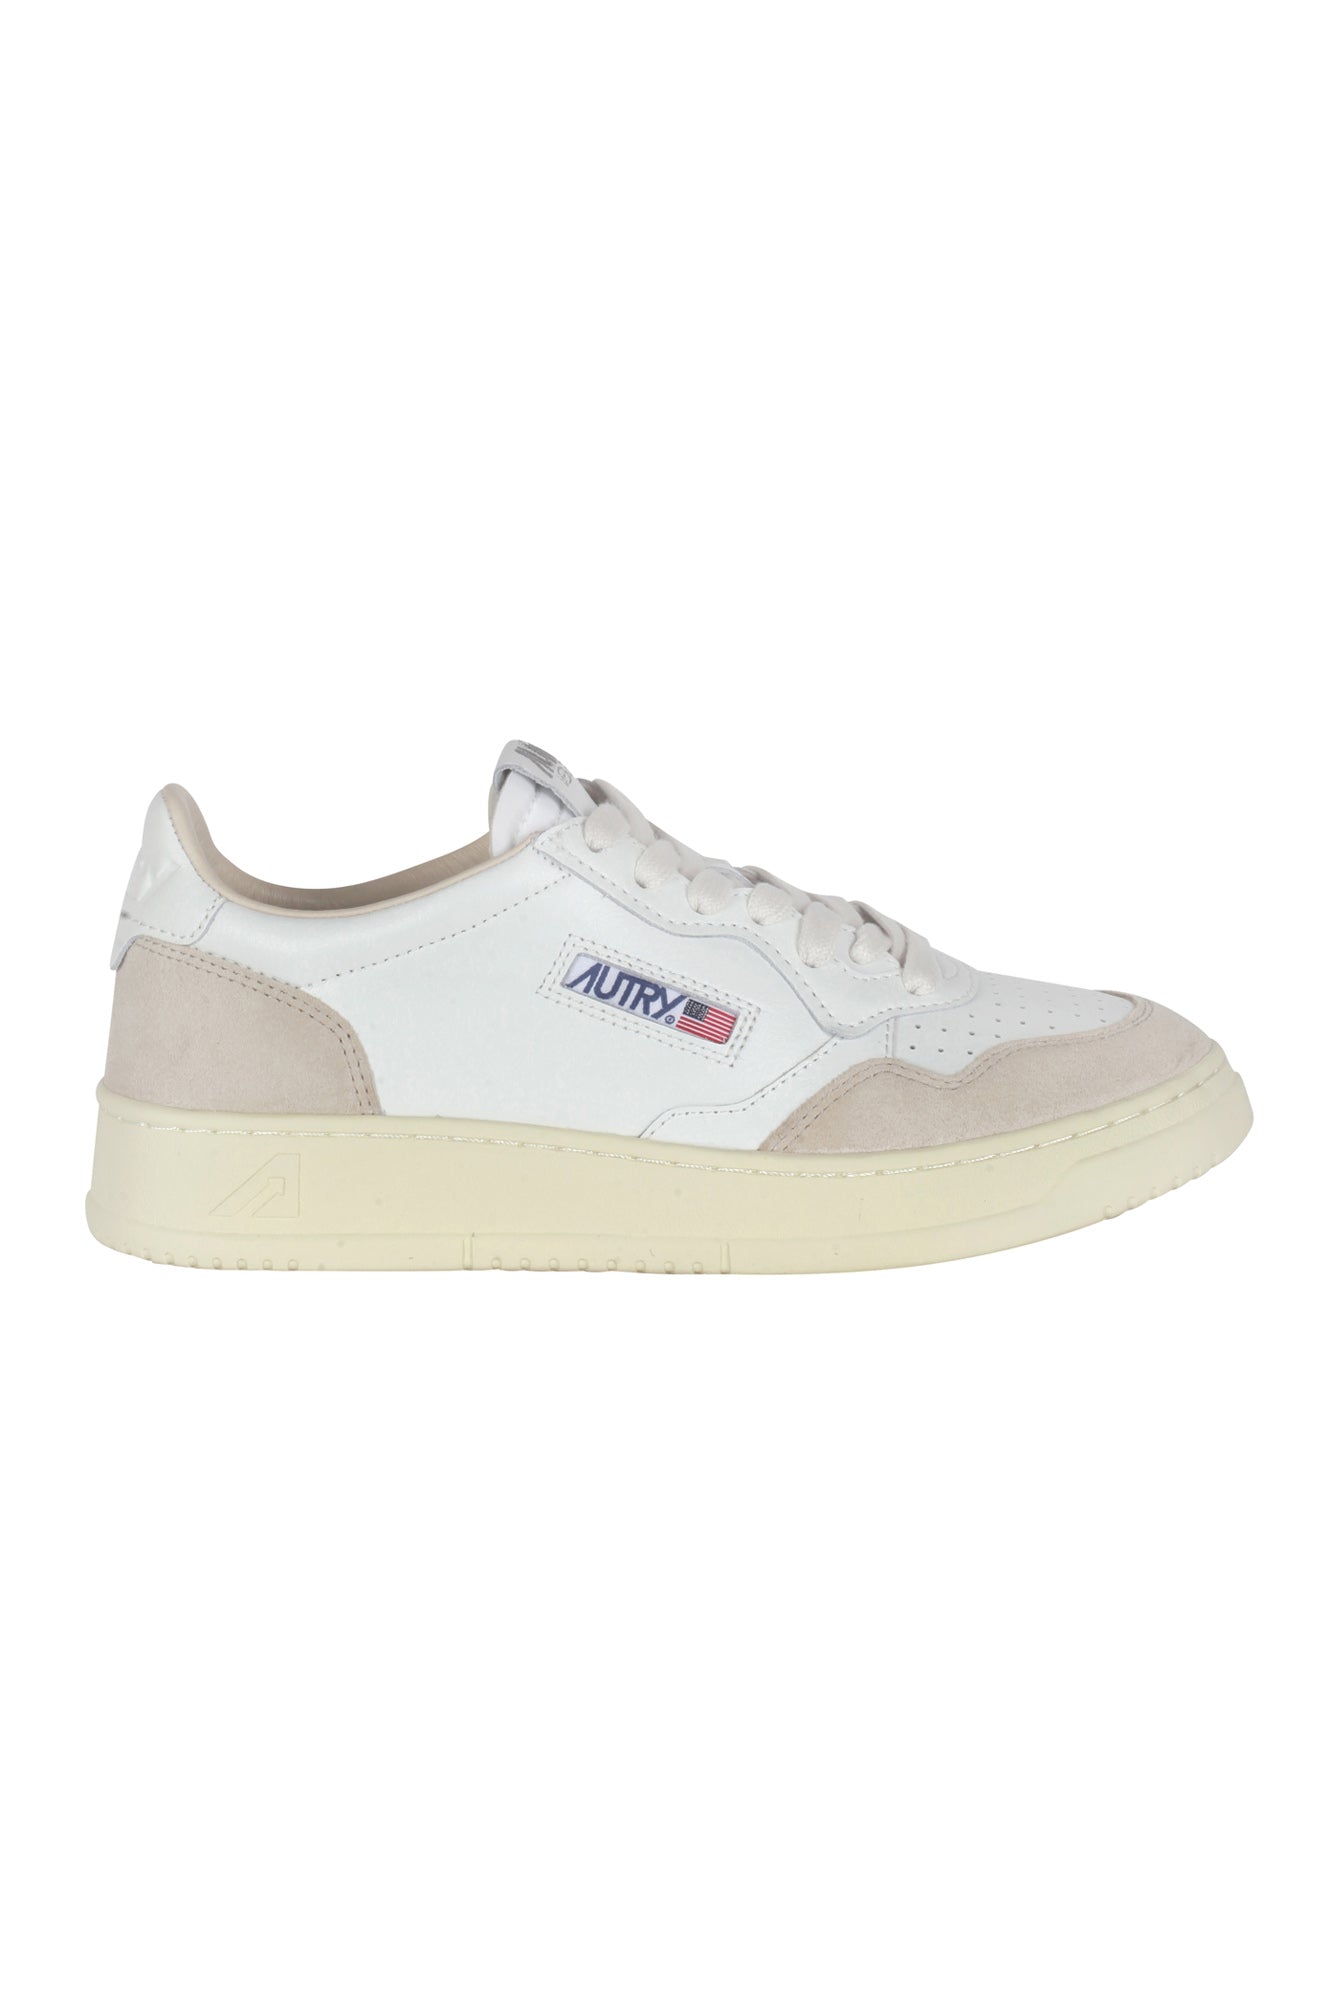 Autry - Sneakers - 430035 - Beige/Bianco